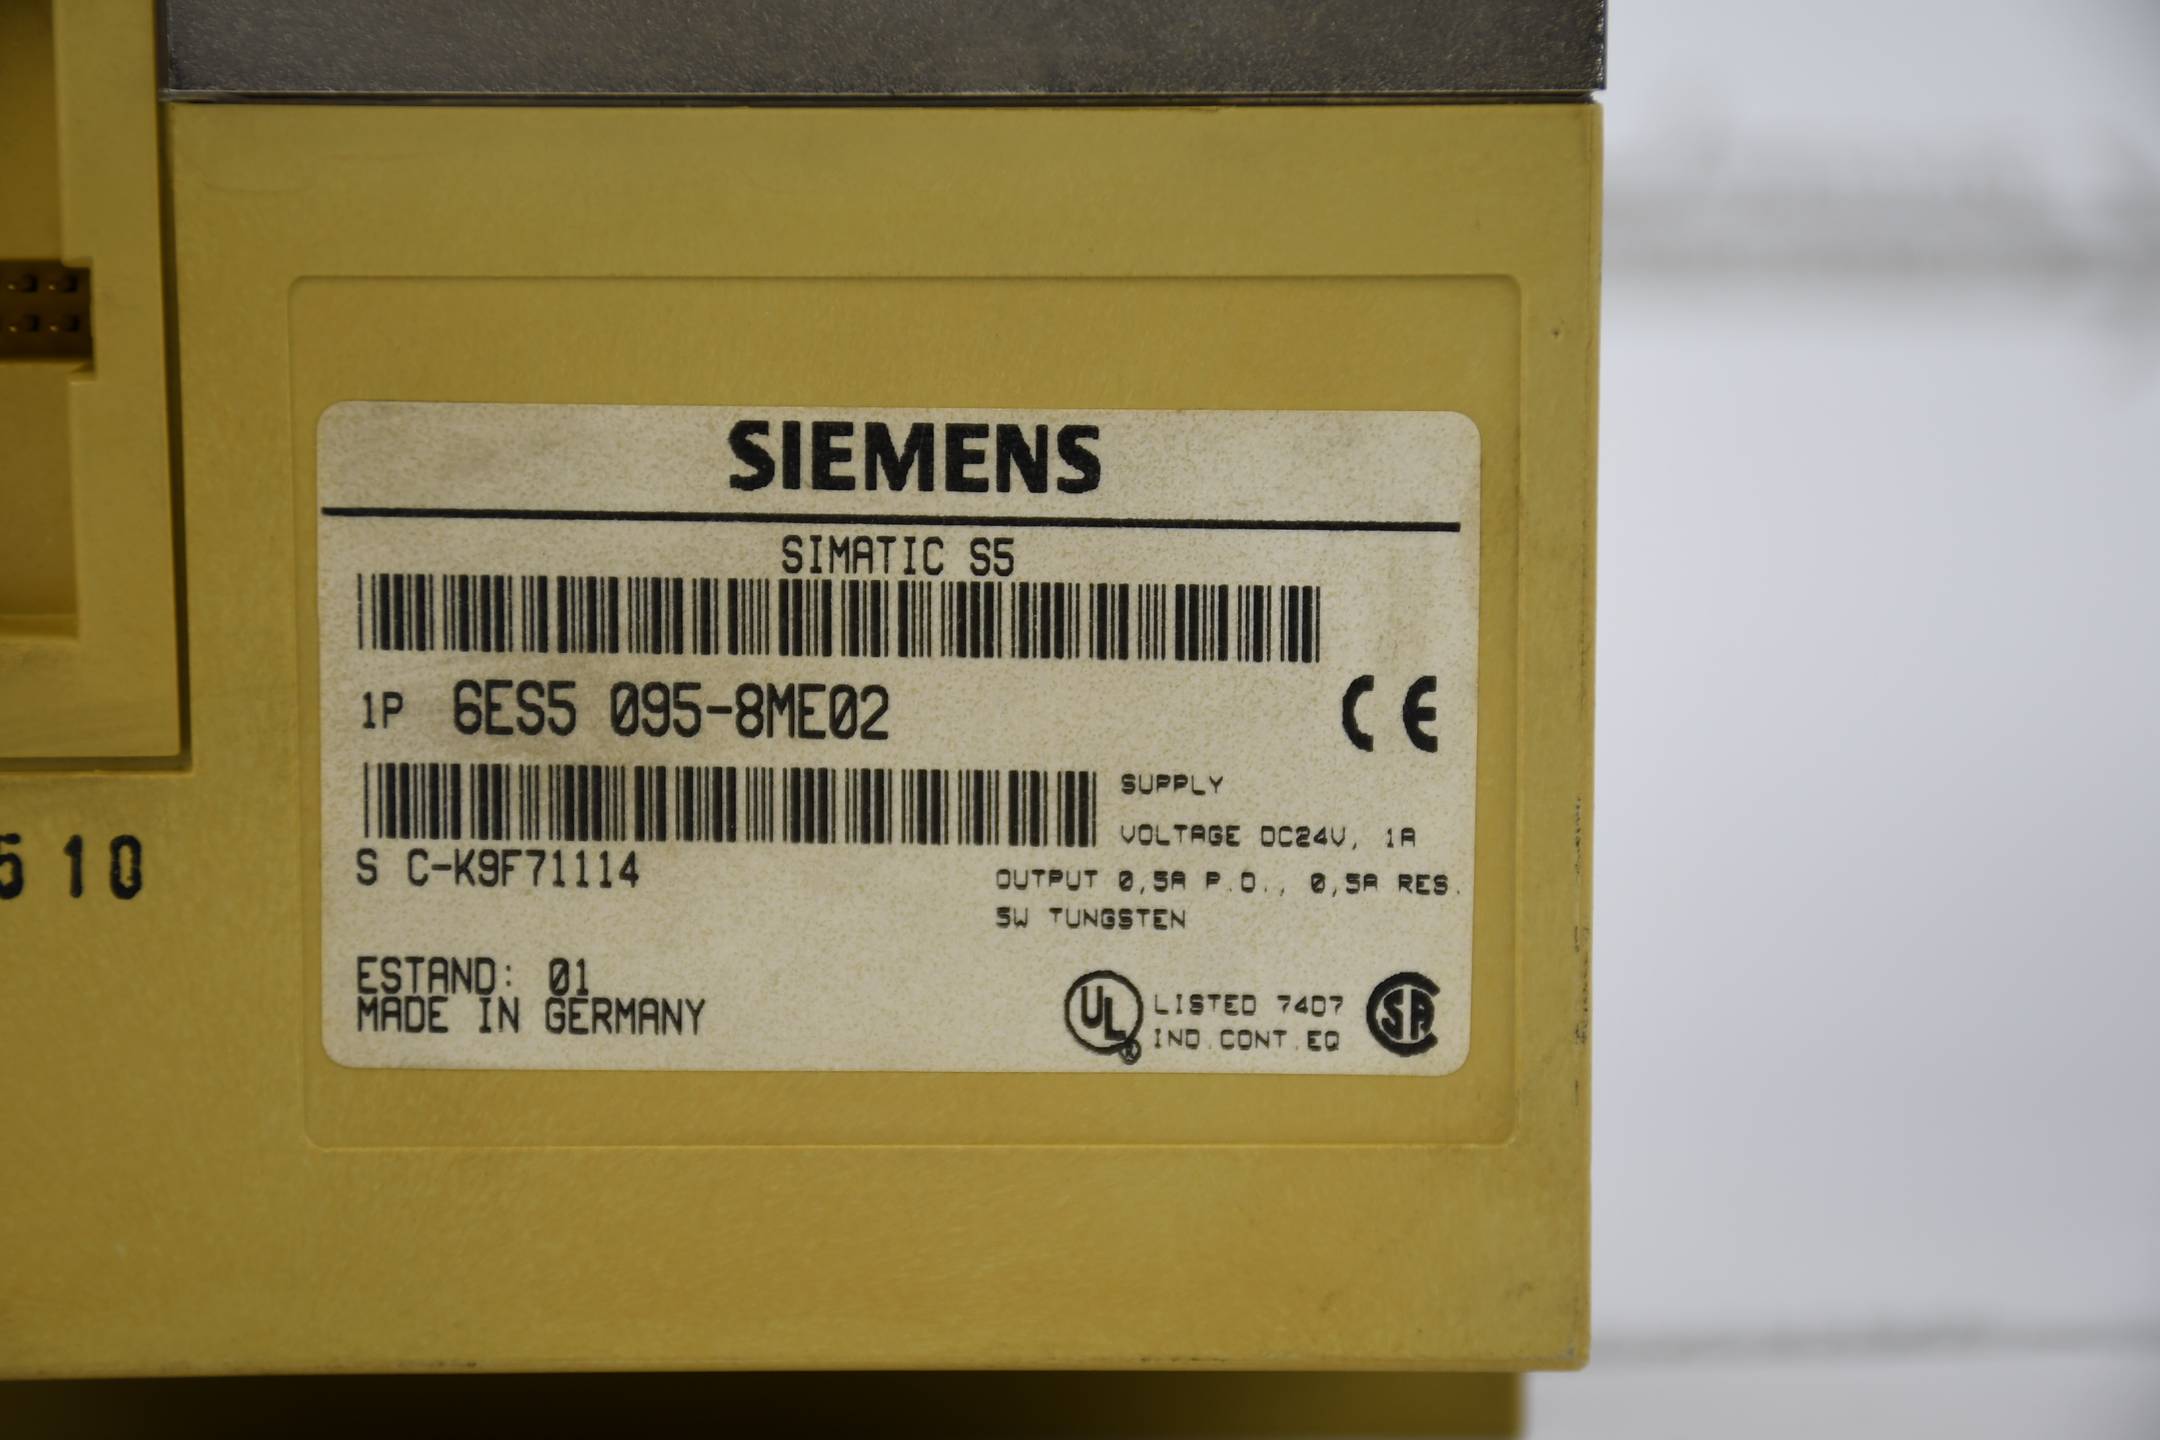 Siemens simatic S5 S5-95U compact unit 6ES5 095-8ME02 ( 6ES5095-8ME02 ) E1